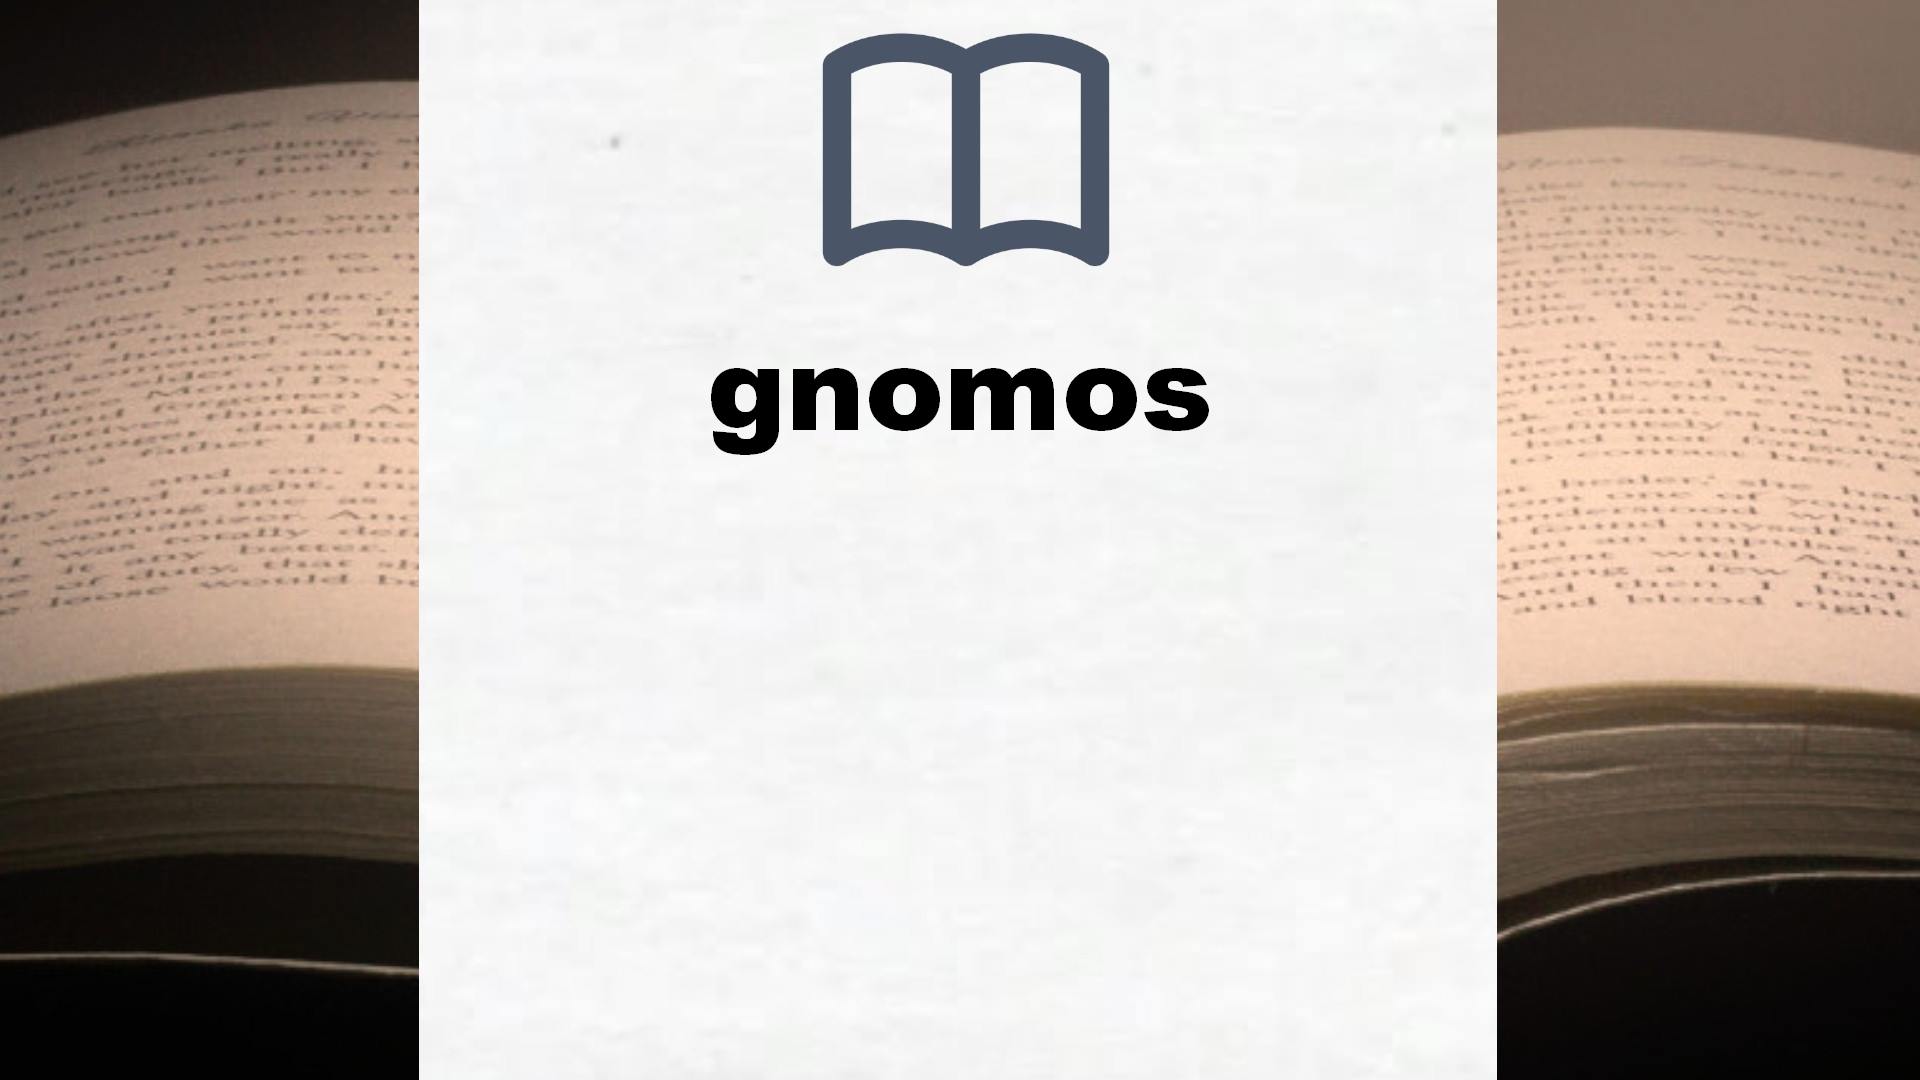 Libros sobre gnomos